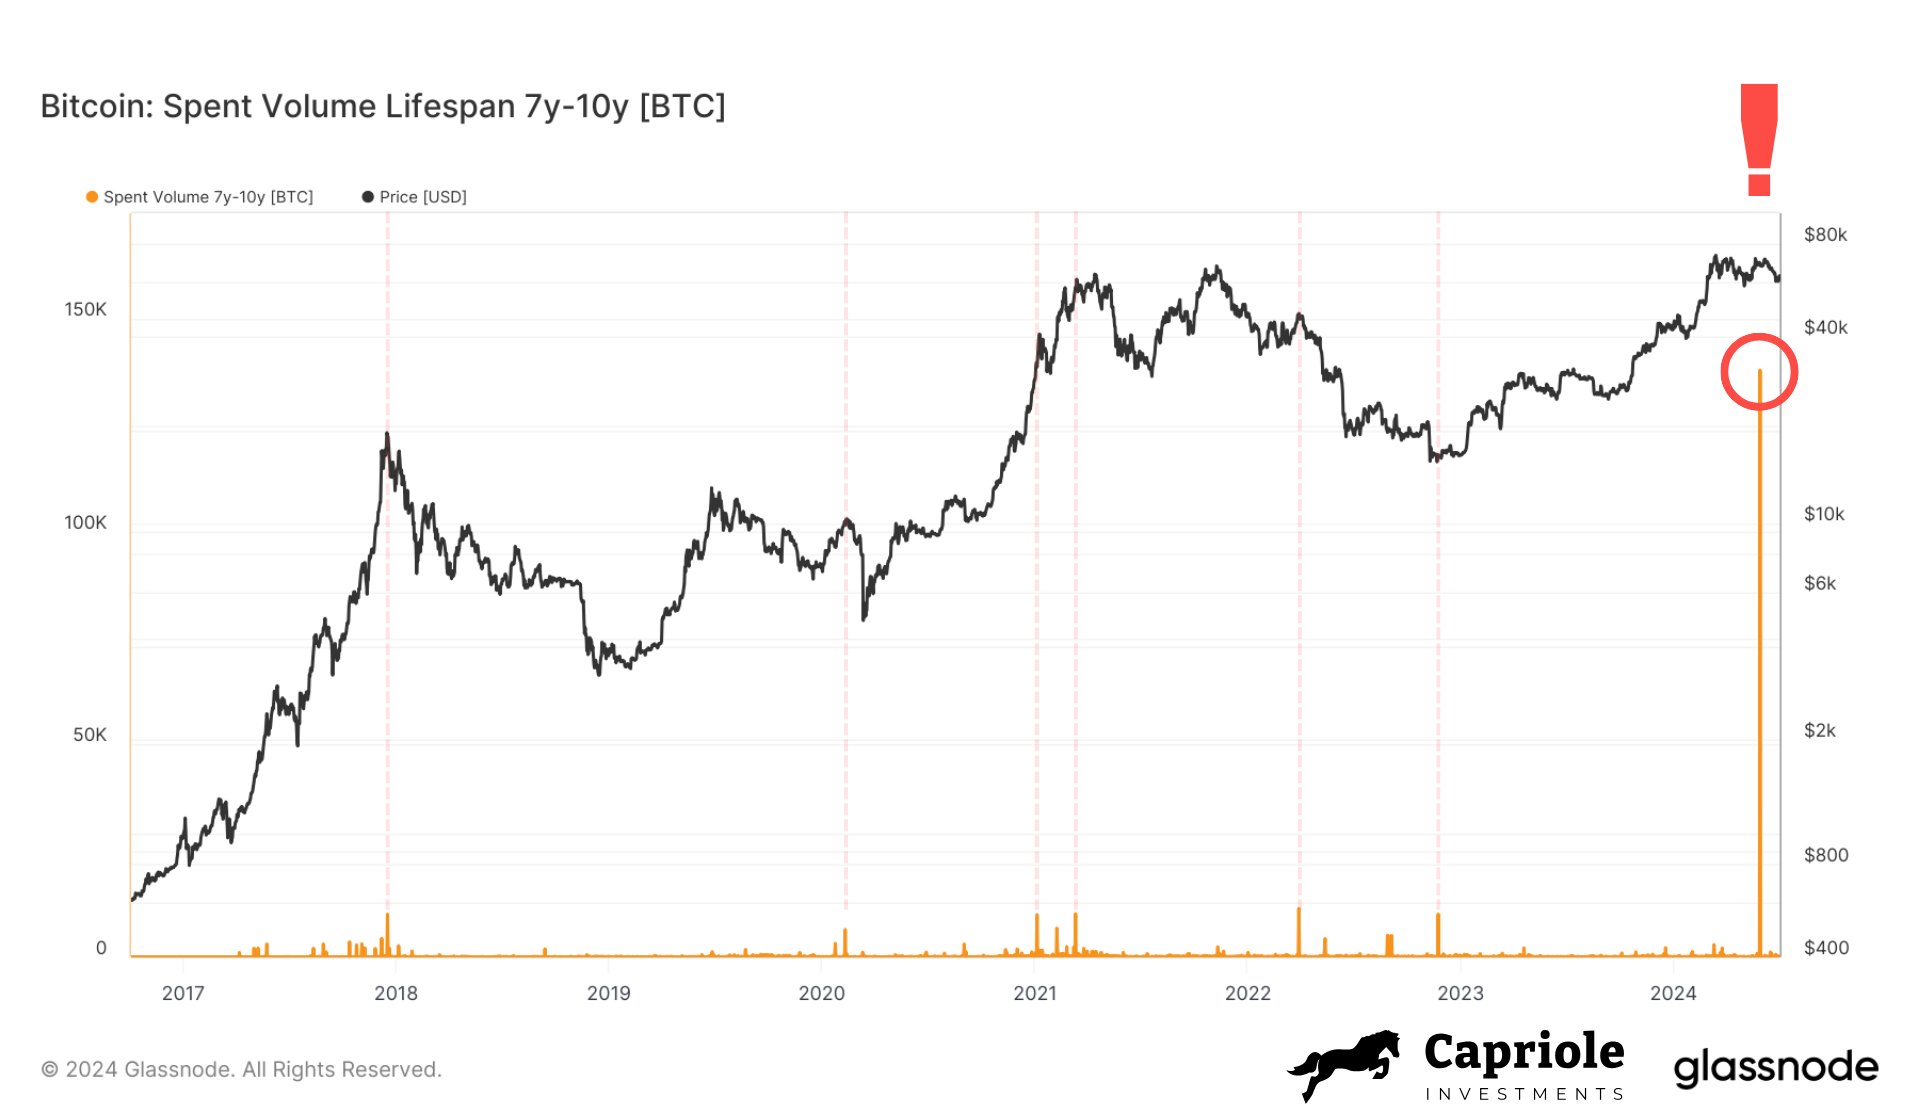 Nguyên nhân đẩy giá Bitcoin xuống dưới 60k và chỉ số biểu đồ cho thấy khả năng hoàn trả từ Mt Gox